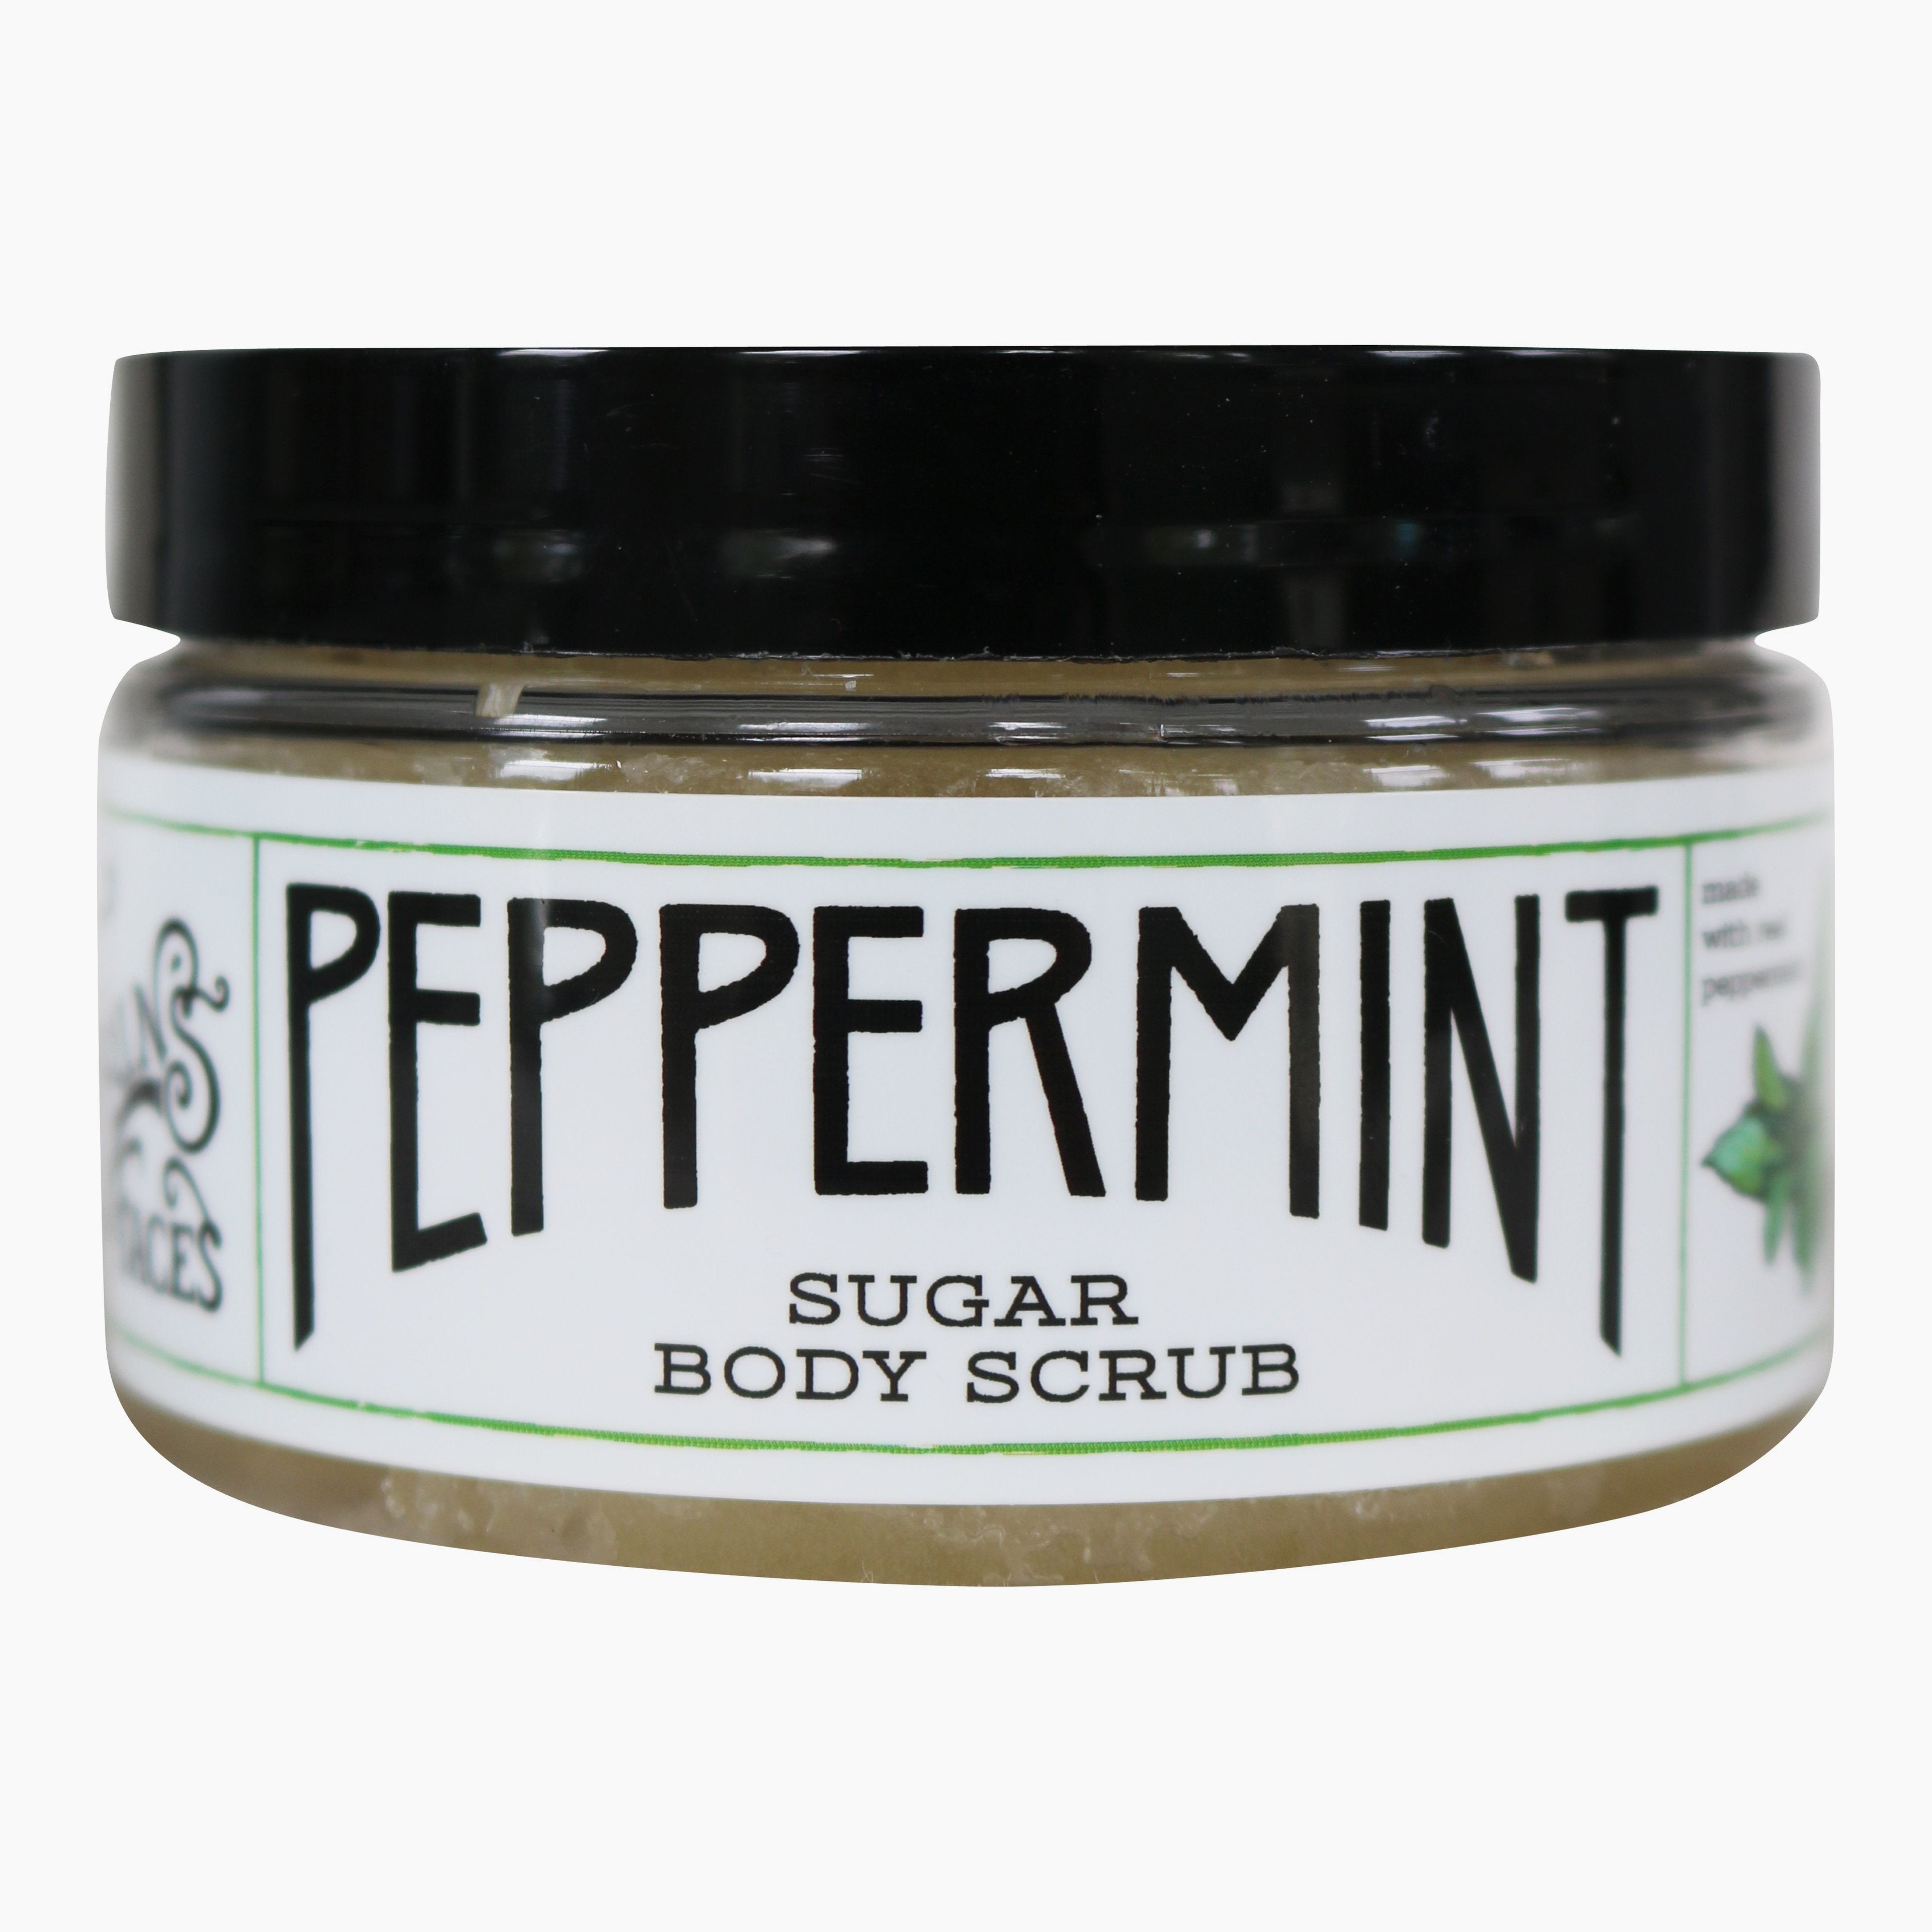 Peppermint Sugar Body Scrub